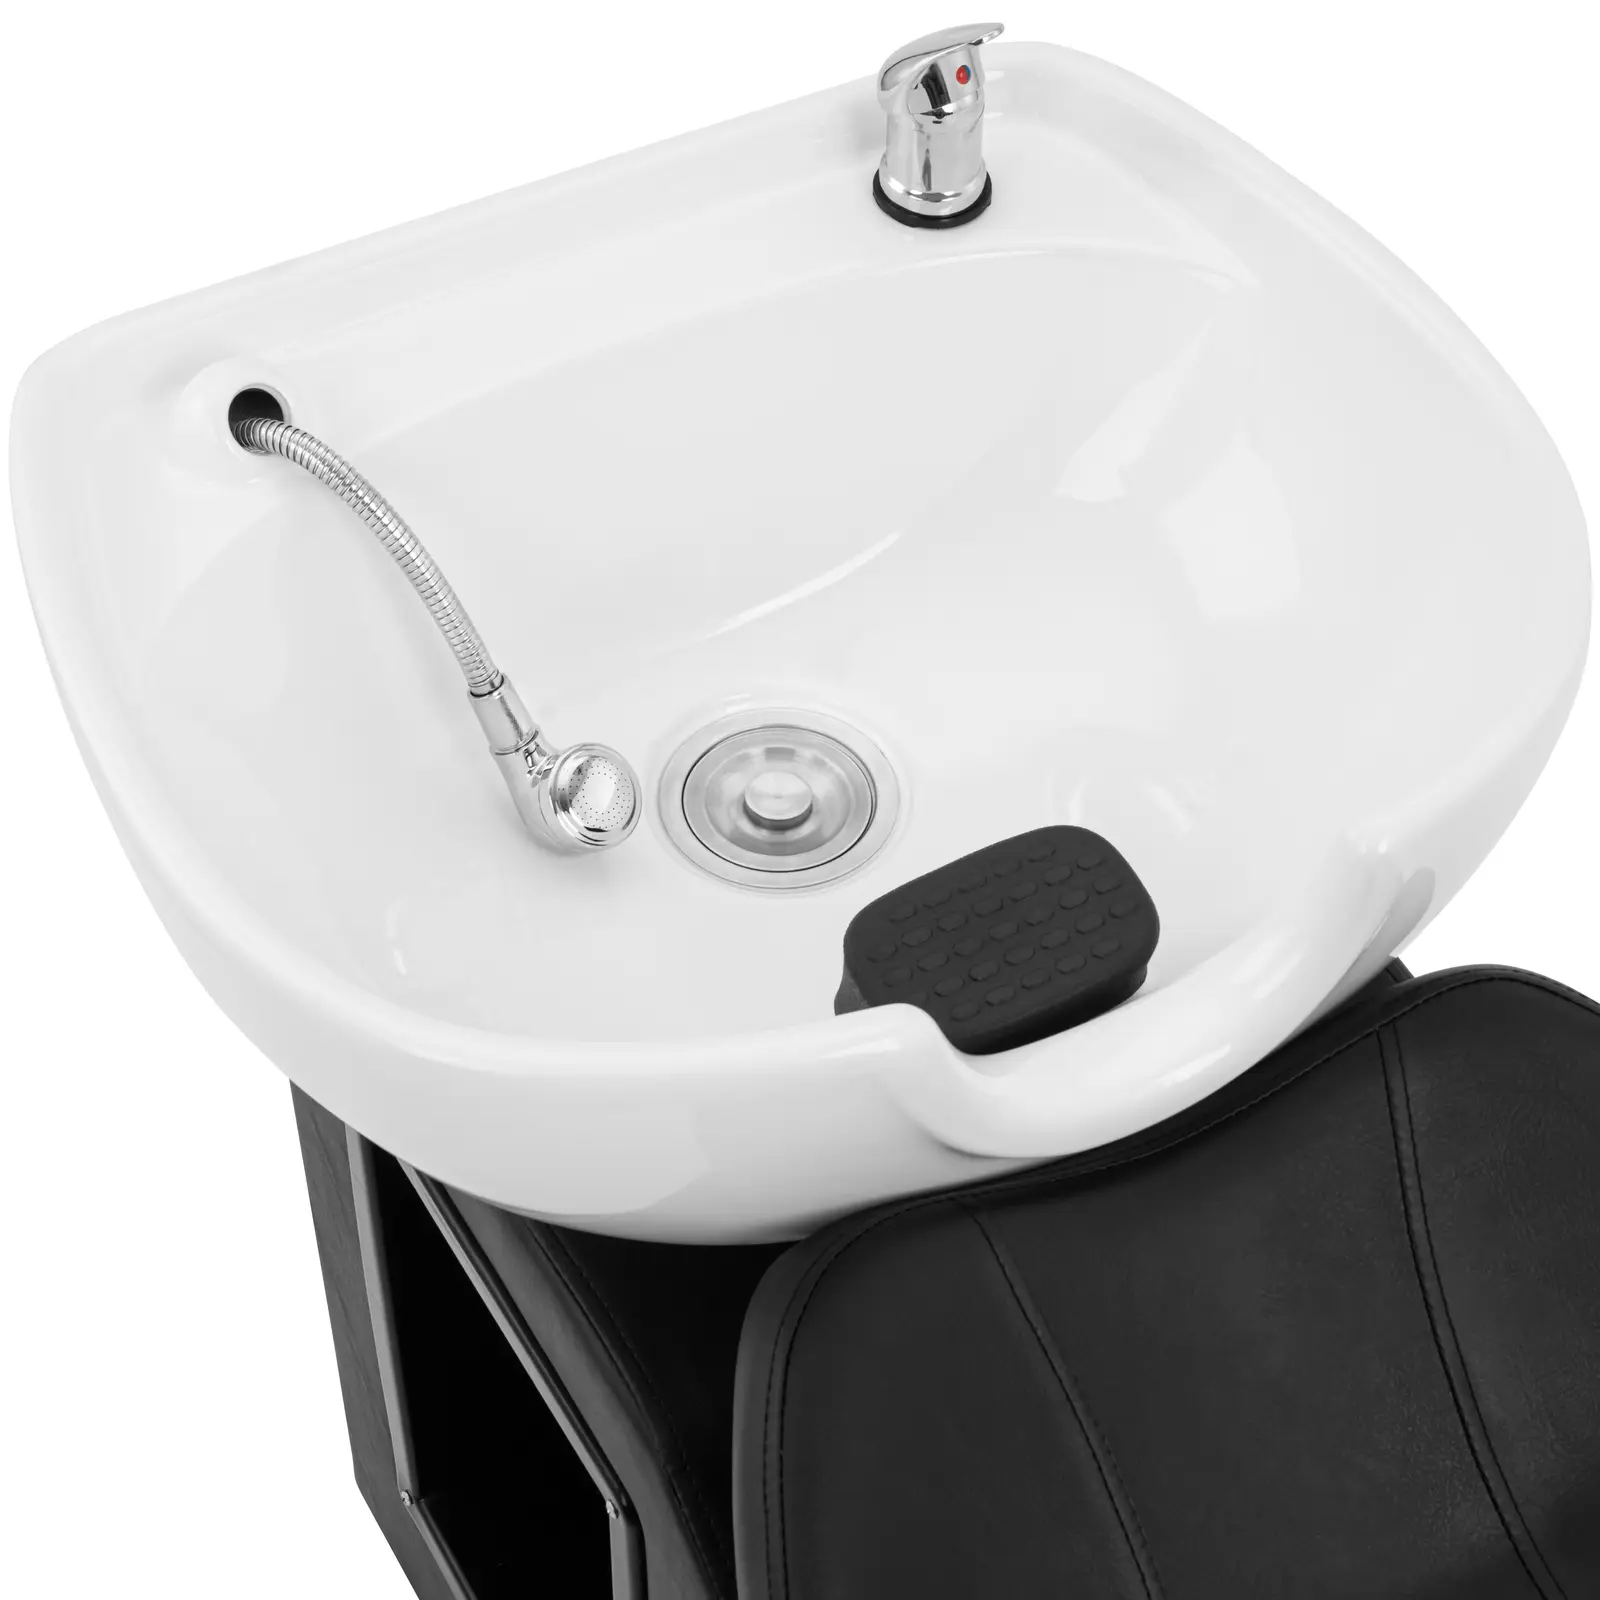 Friseur-Waschbecken mit Sessel - Maße Becken 600 x 450 x 150 mm - Schwarz/Weiß - 1